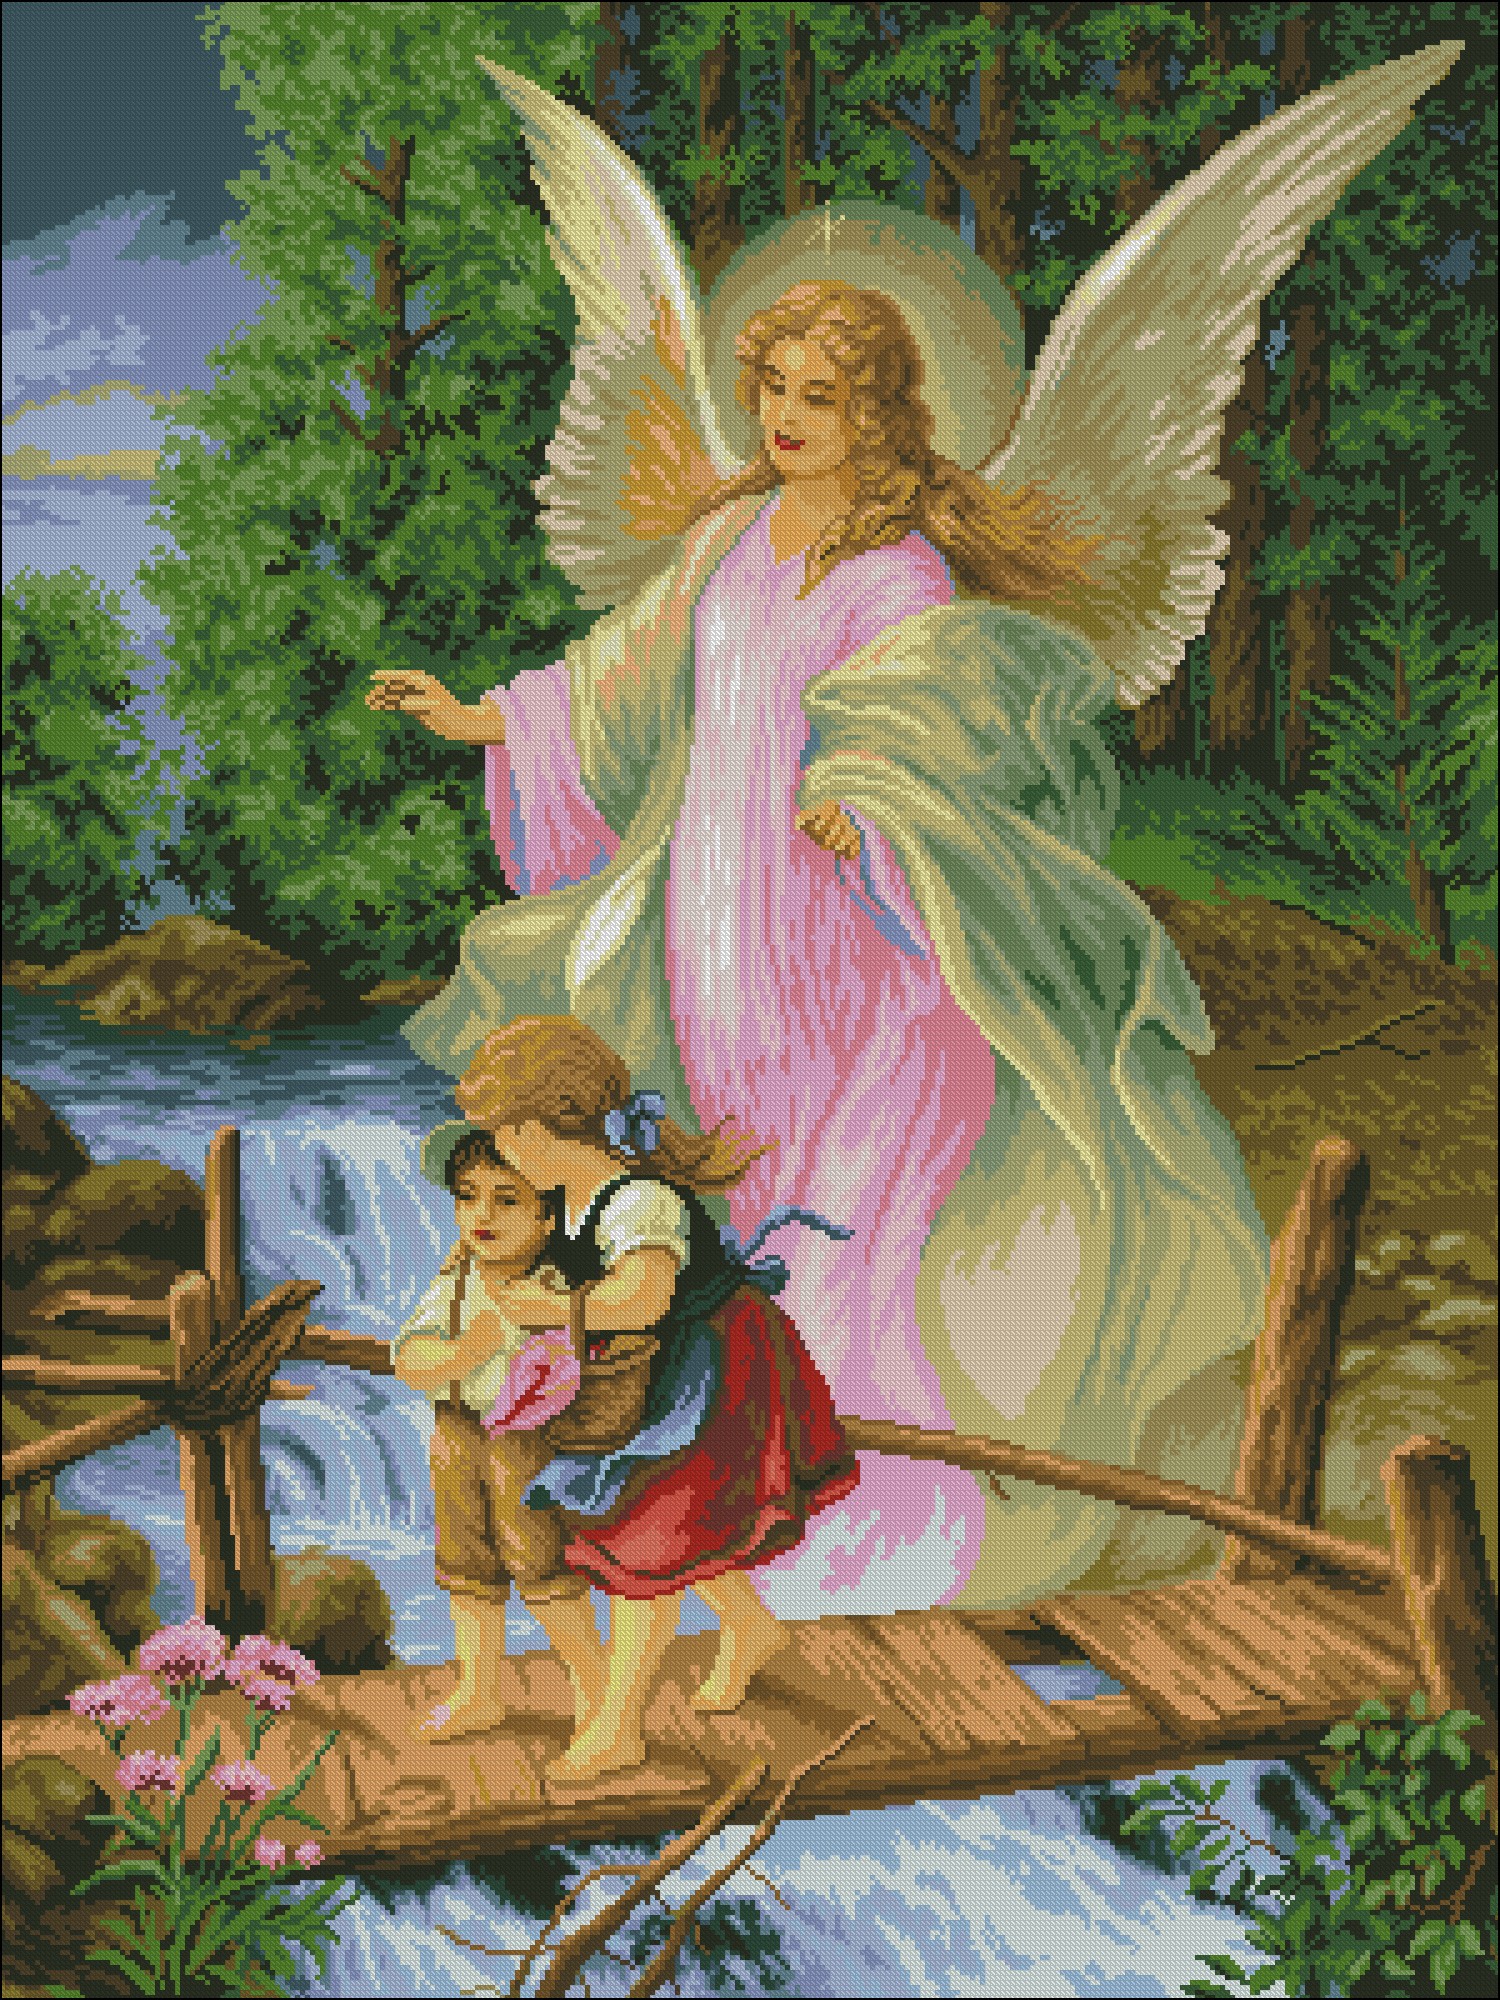 Читать онлайн ««Пасхальный Ангел». Схема вышивки крестом», e-PATTERN – Литрес